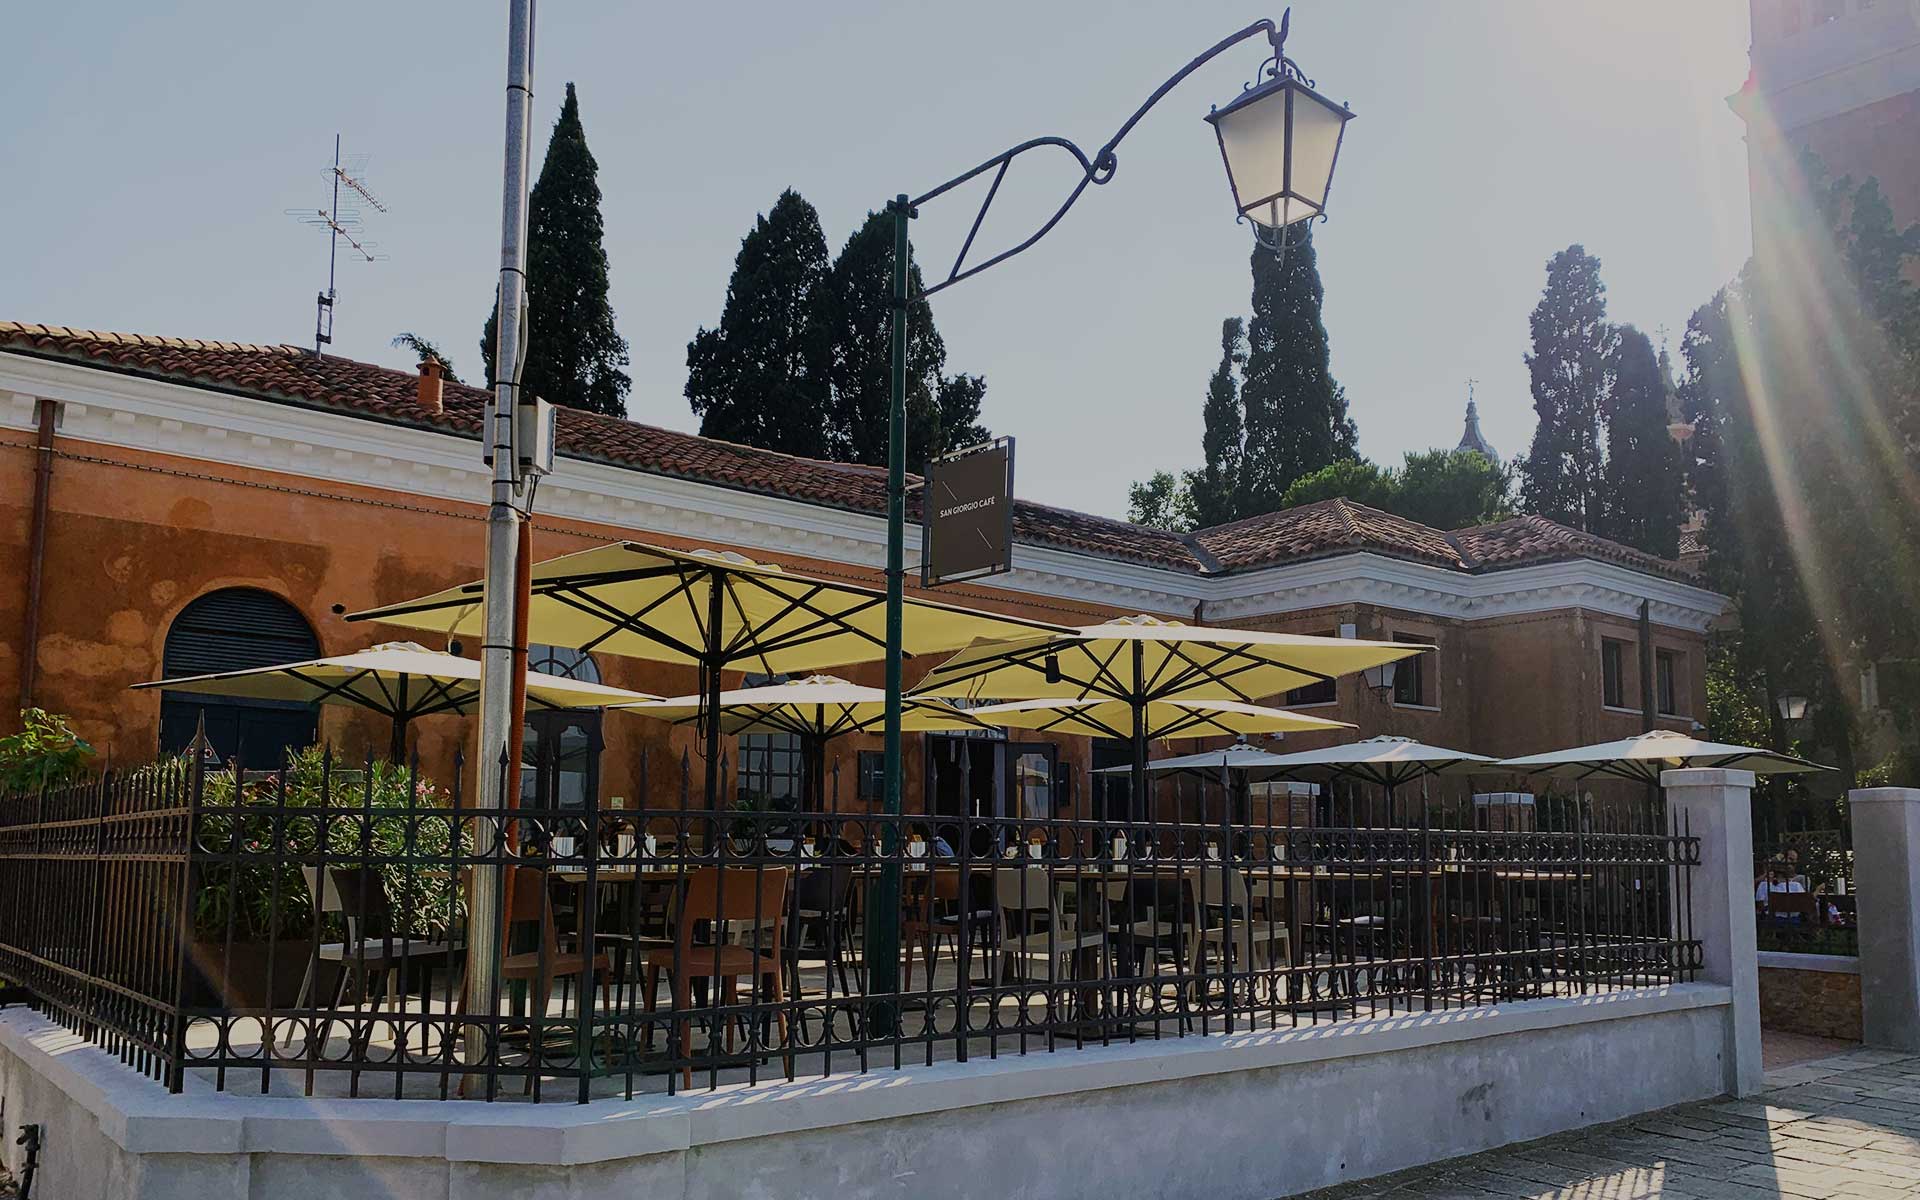 San Giorgio Café